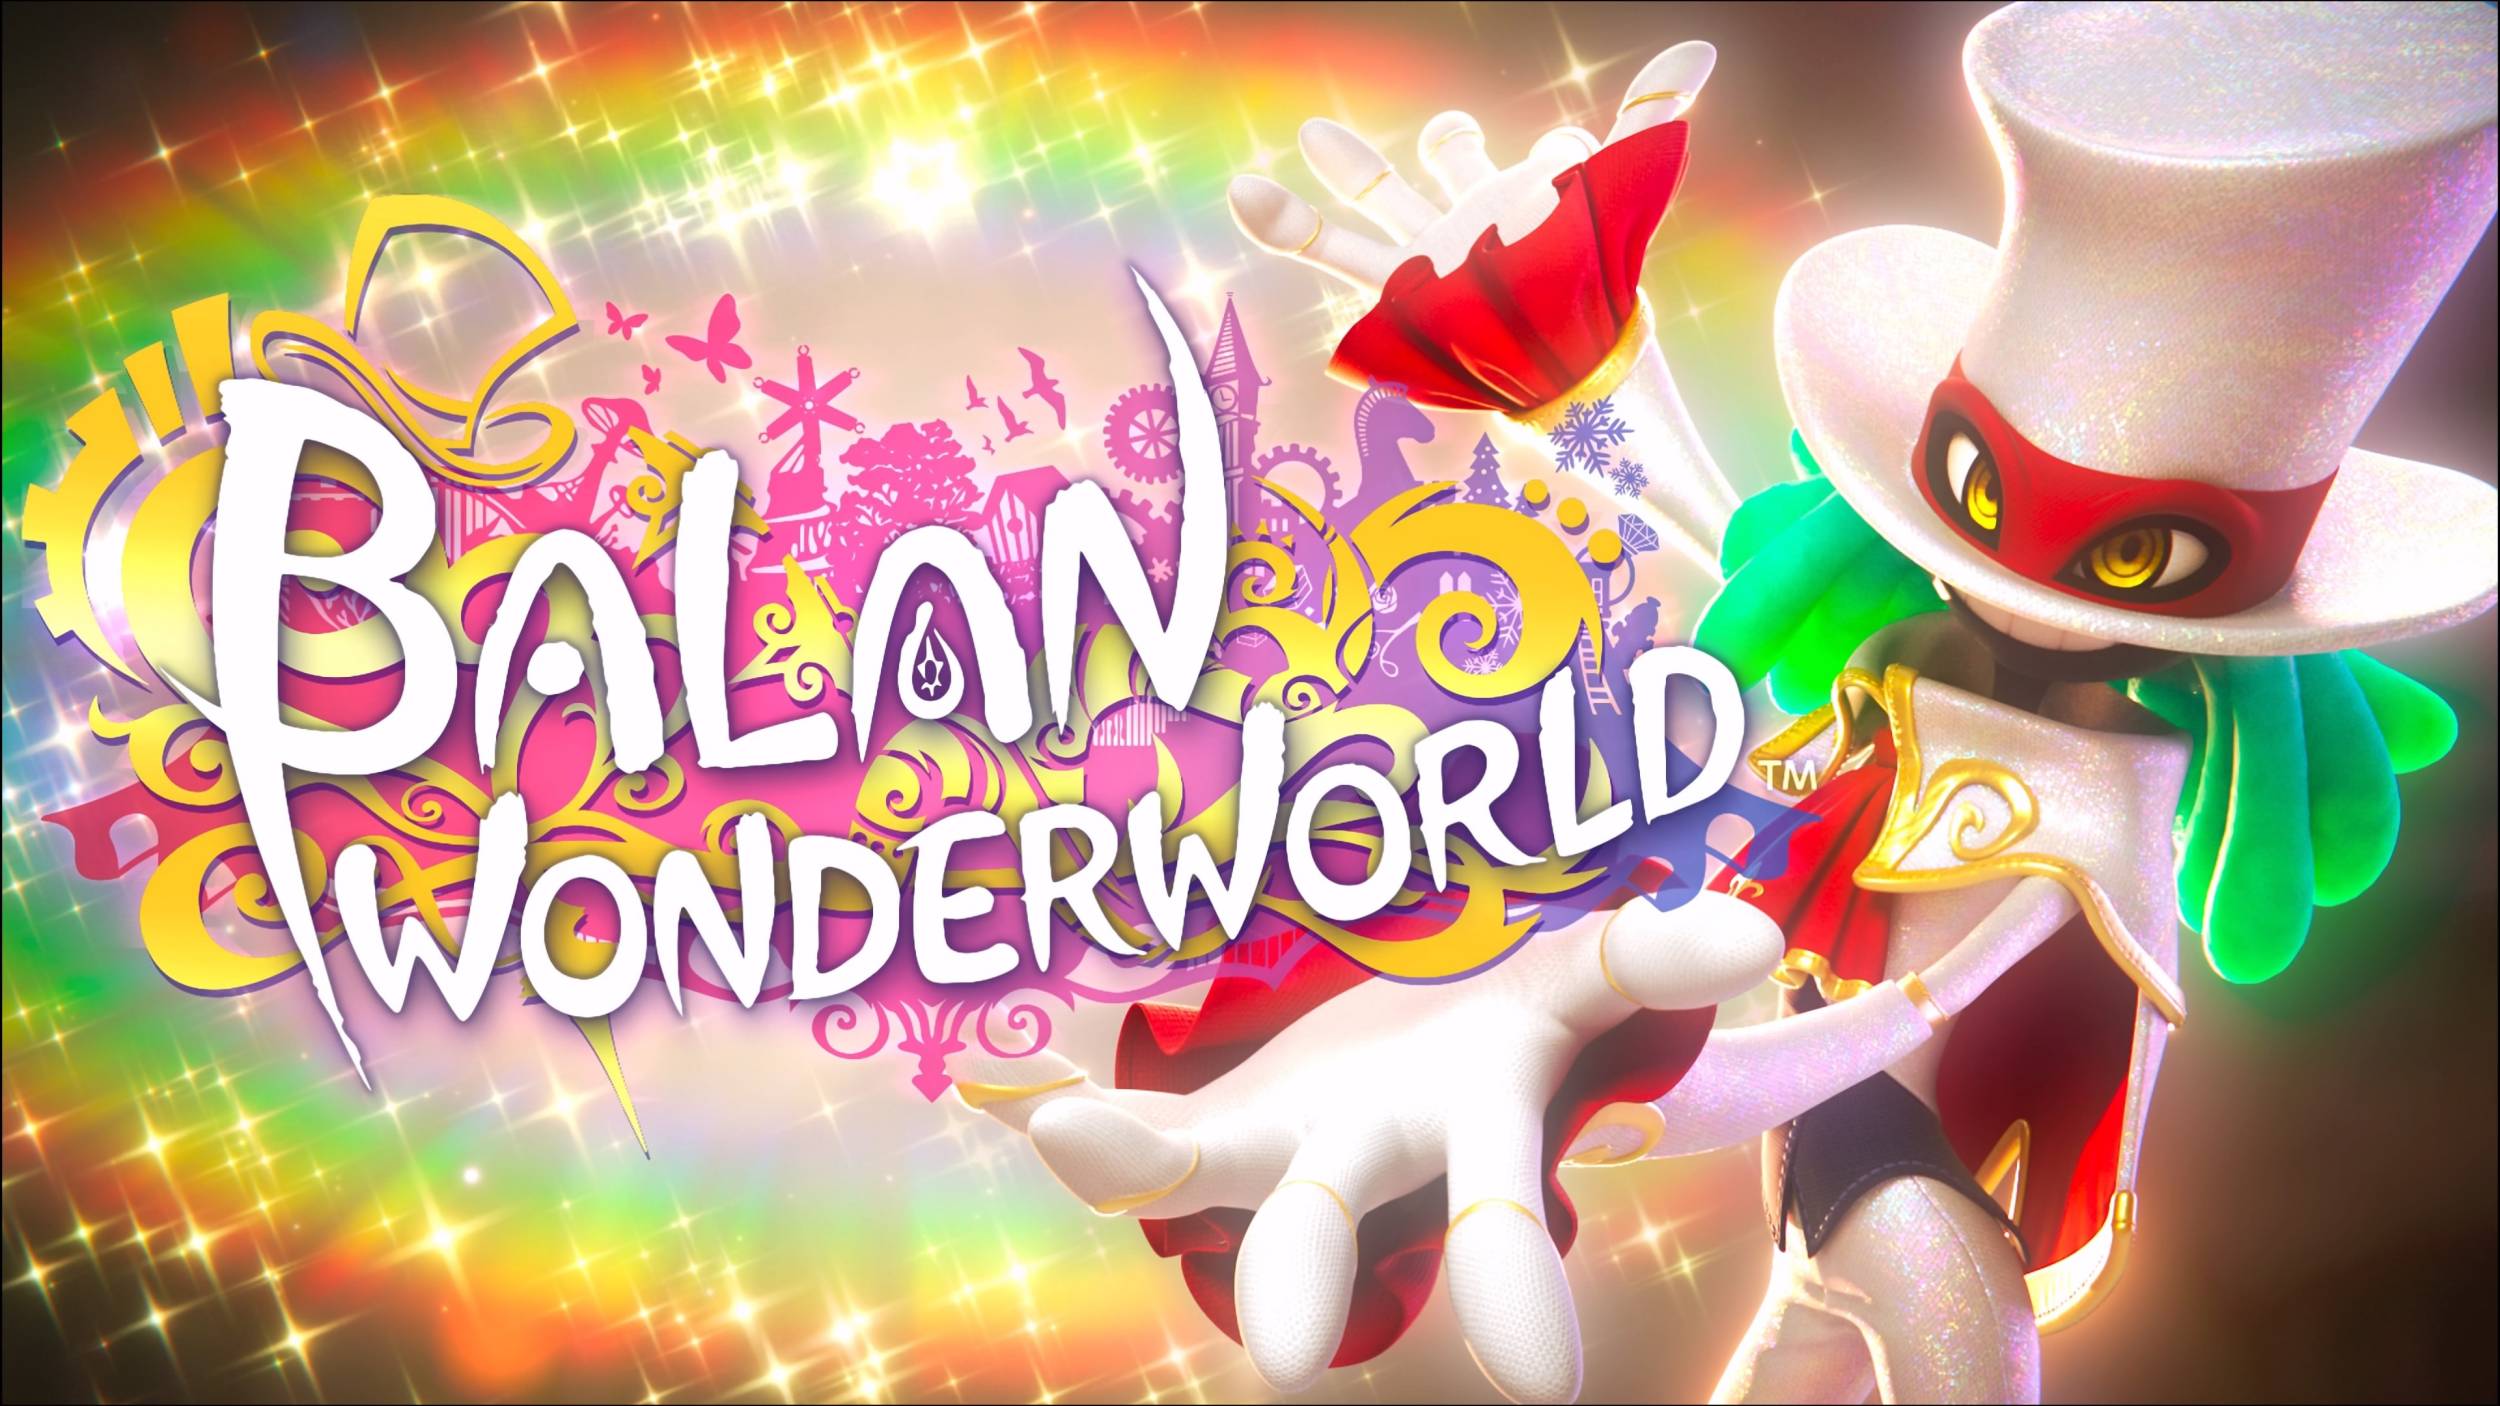 Balan Wonderwold